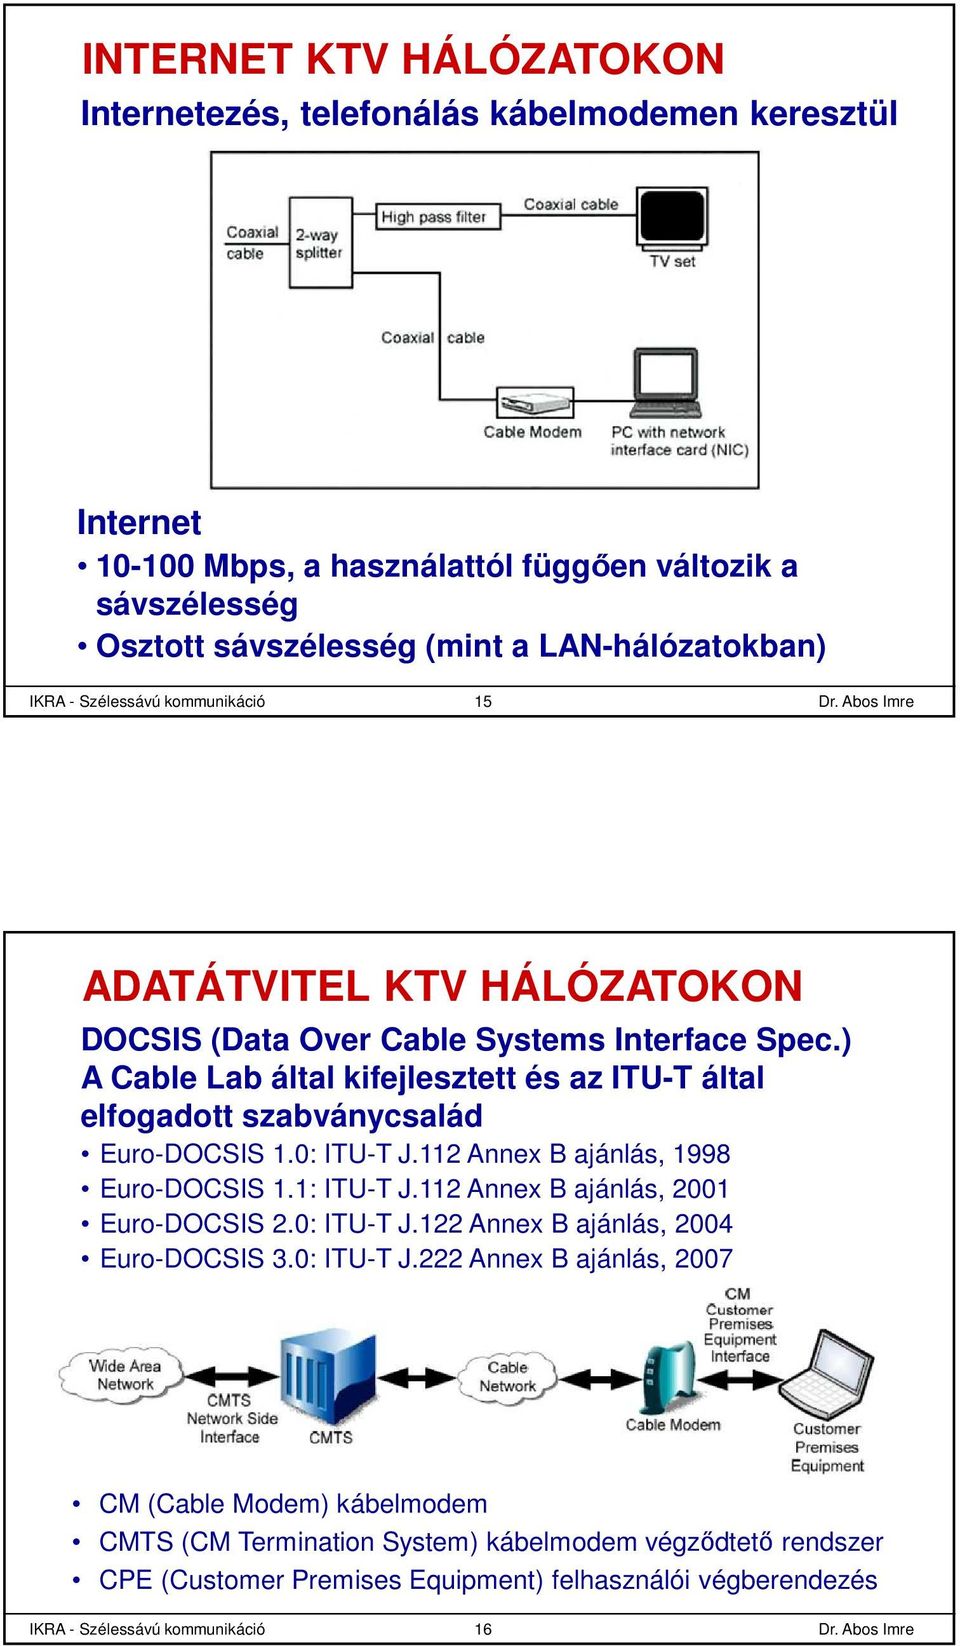 ) A Cable Lab által kifejlesztett és az ITU-T által elfogadott szabványcsalád Euro-DOCSIS 1.0: ITU-T J.112 Annex B ajánlás, 1998 Euro-DOCSIS 1.1: ITU-T J.